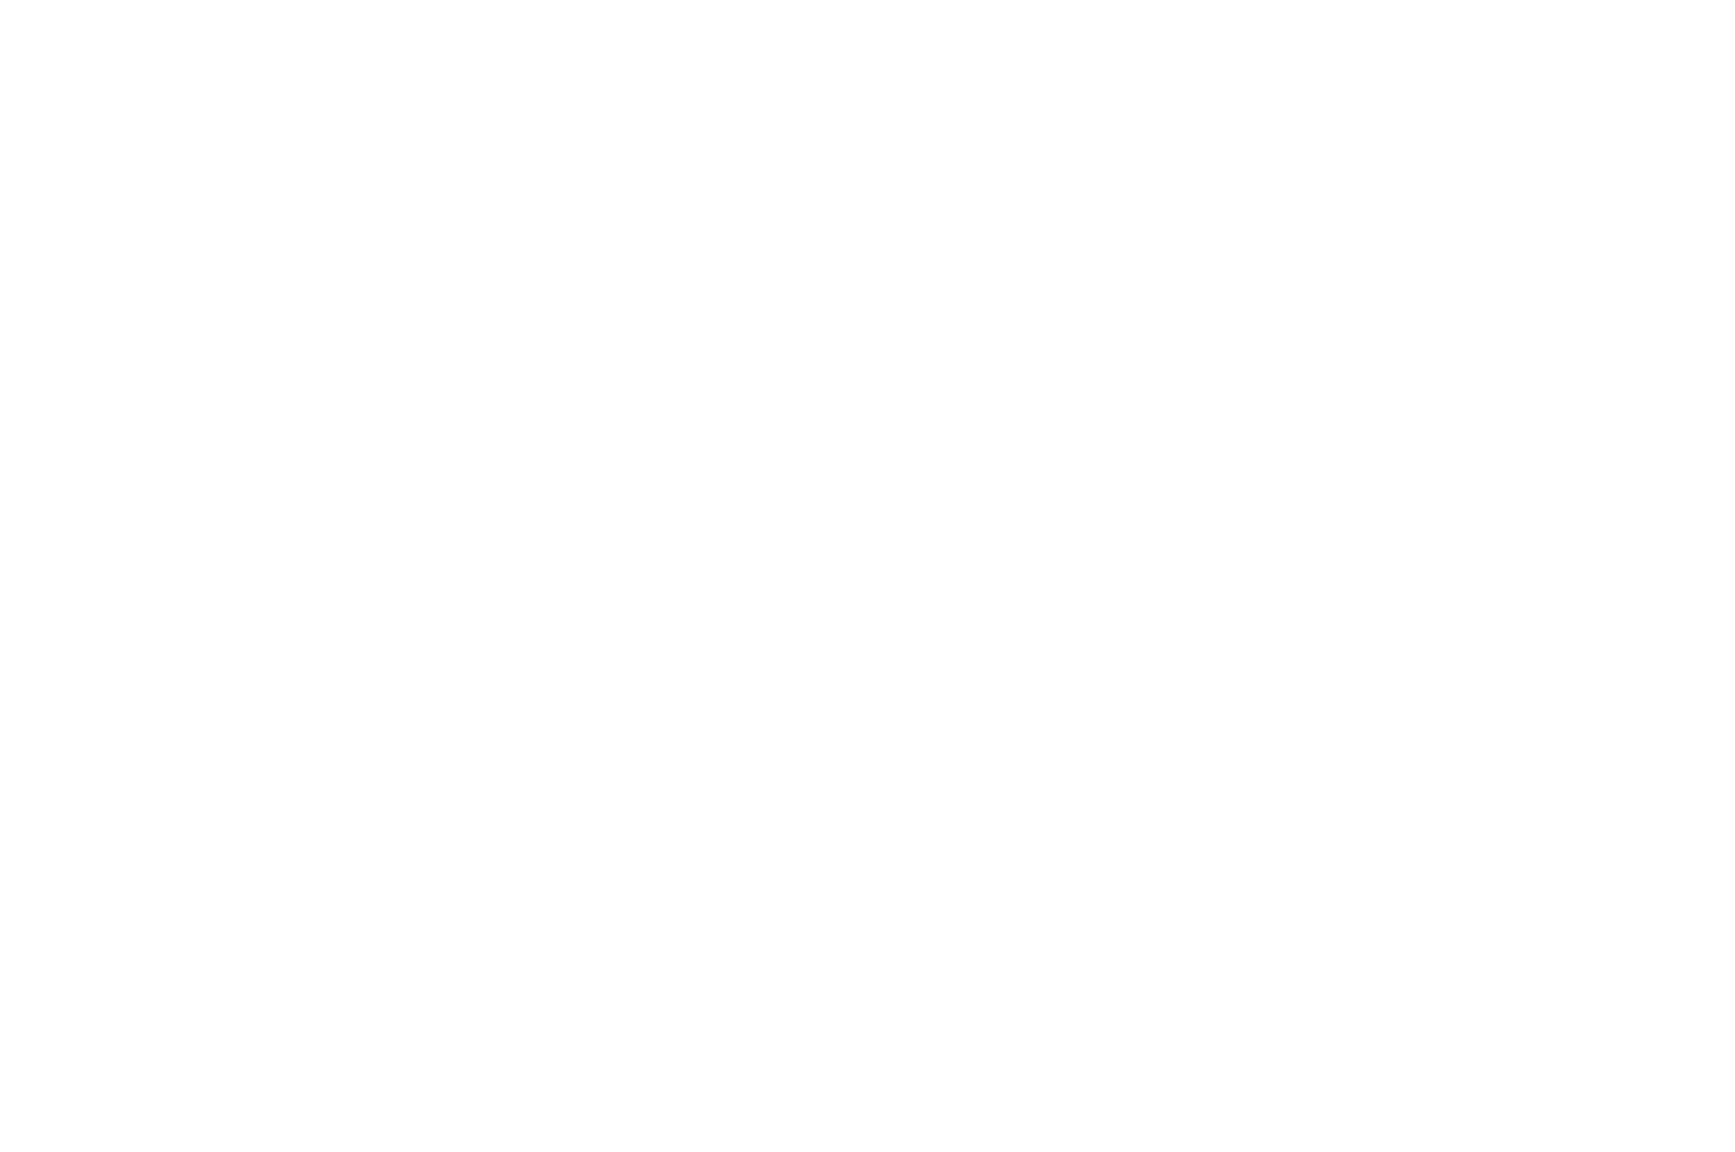 OFFICIAL SELECTION - ART IN MOTION Film Festival - Best Short Documentary 2024